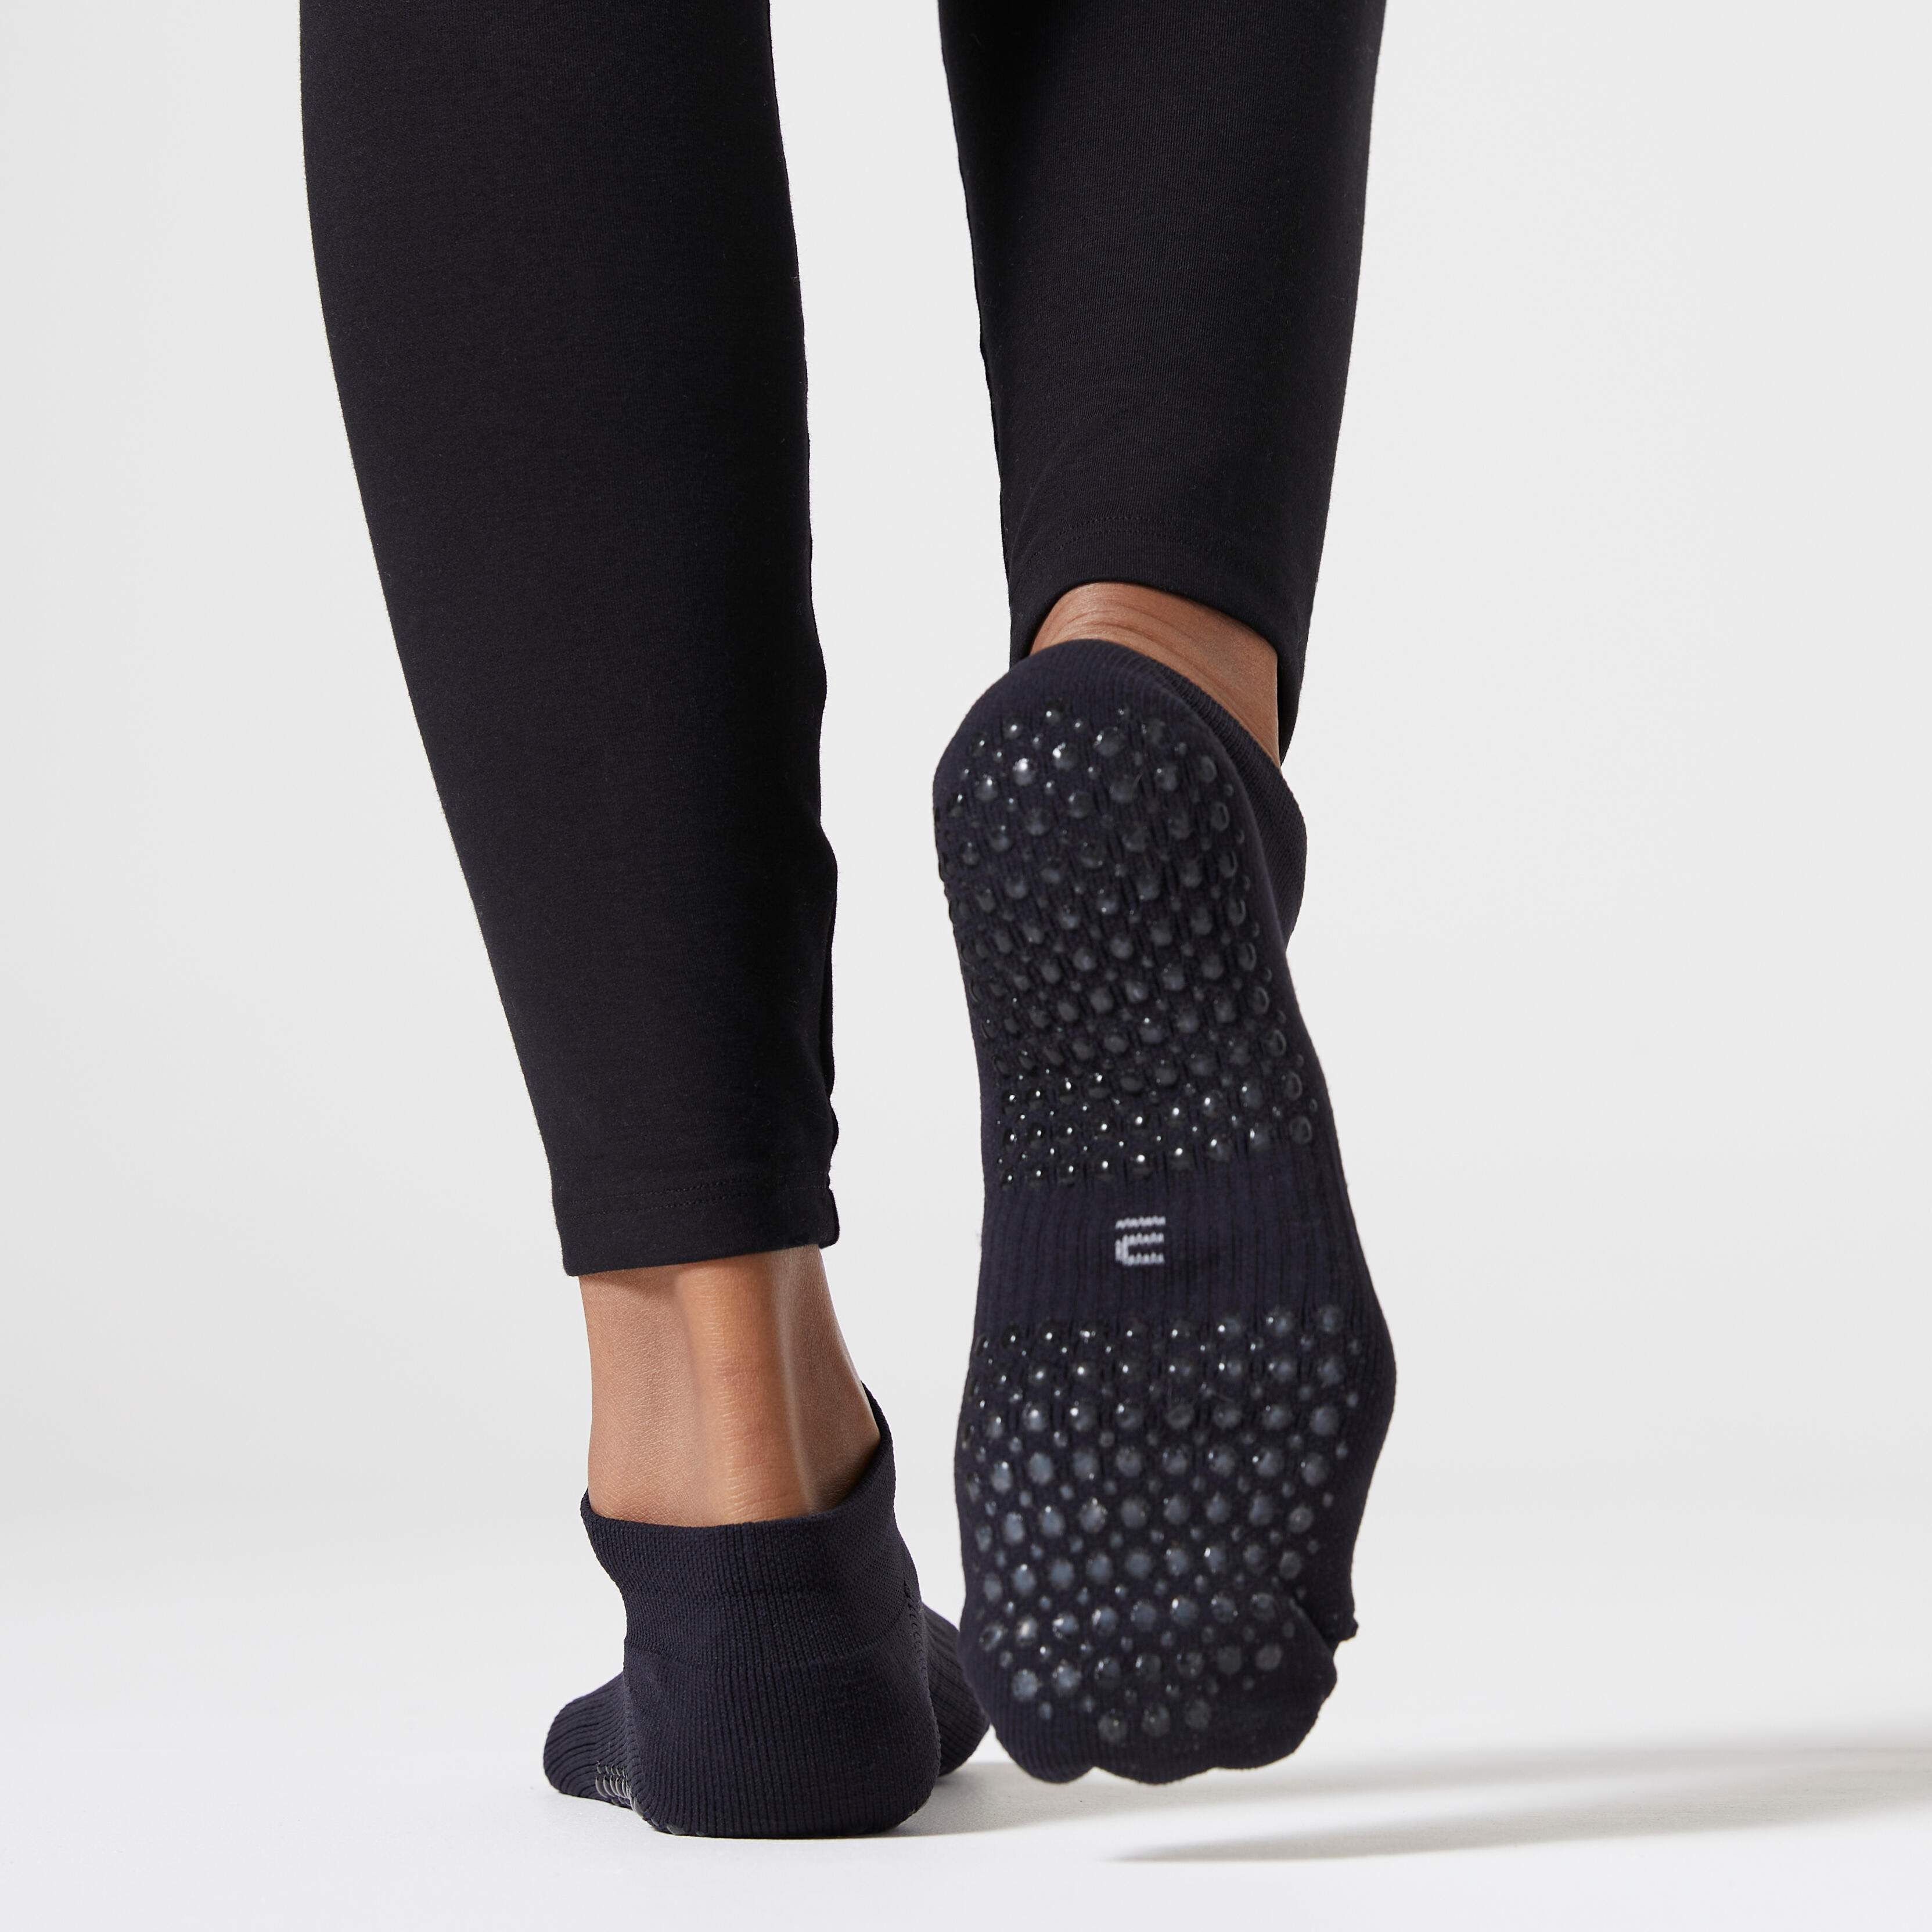 Women’s Fitness Socks - Black